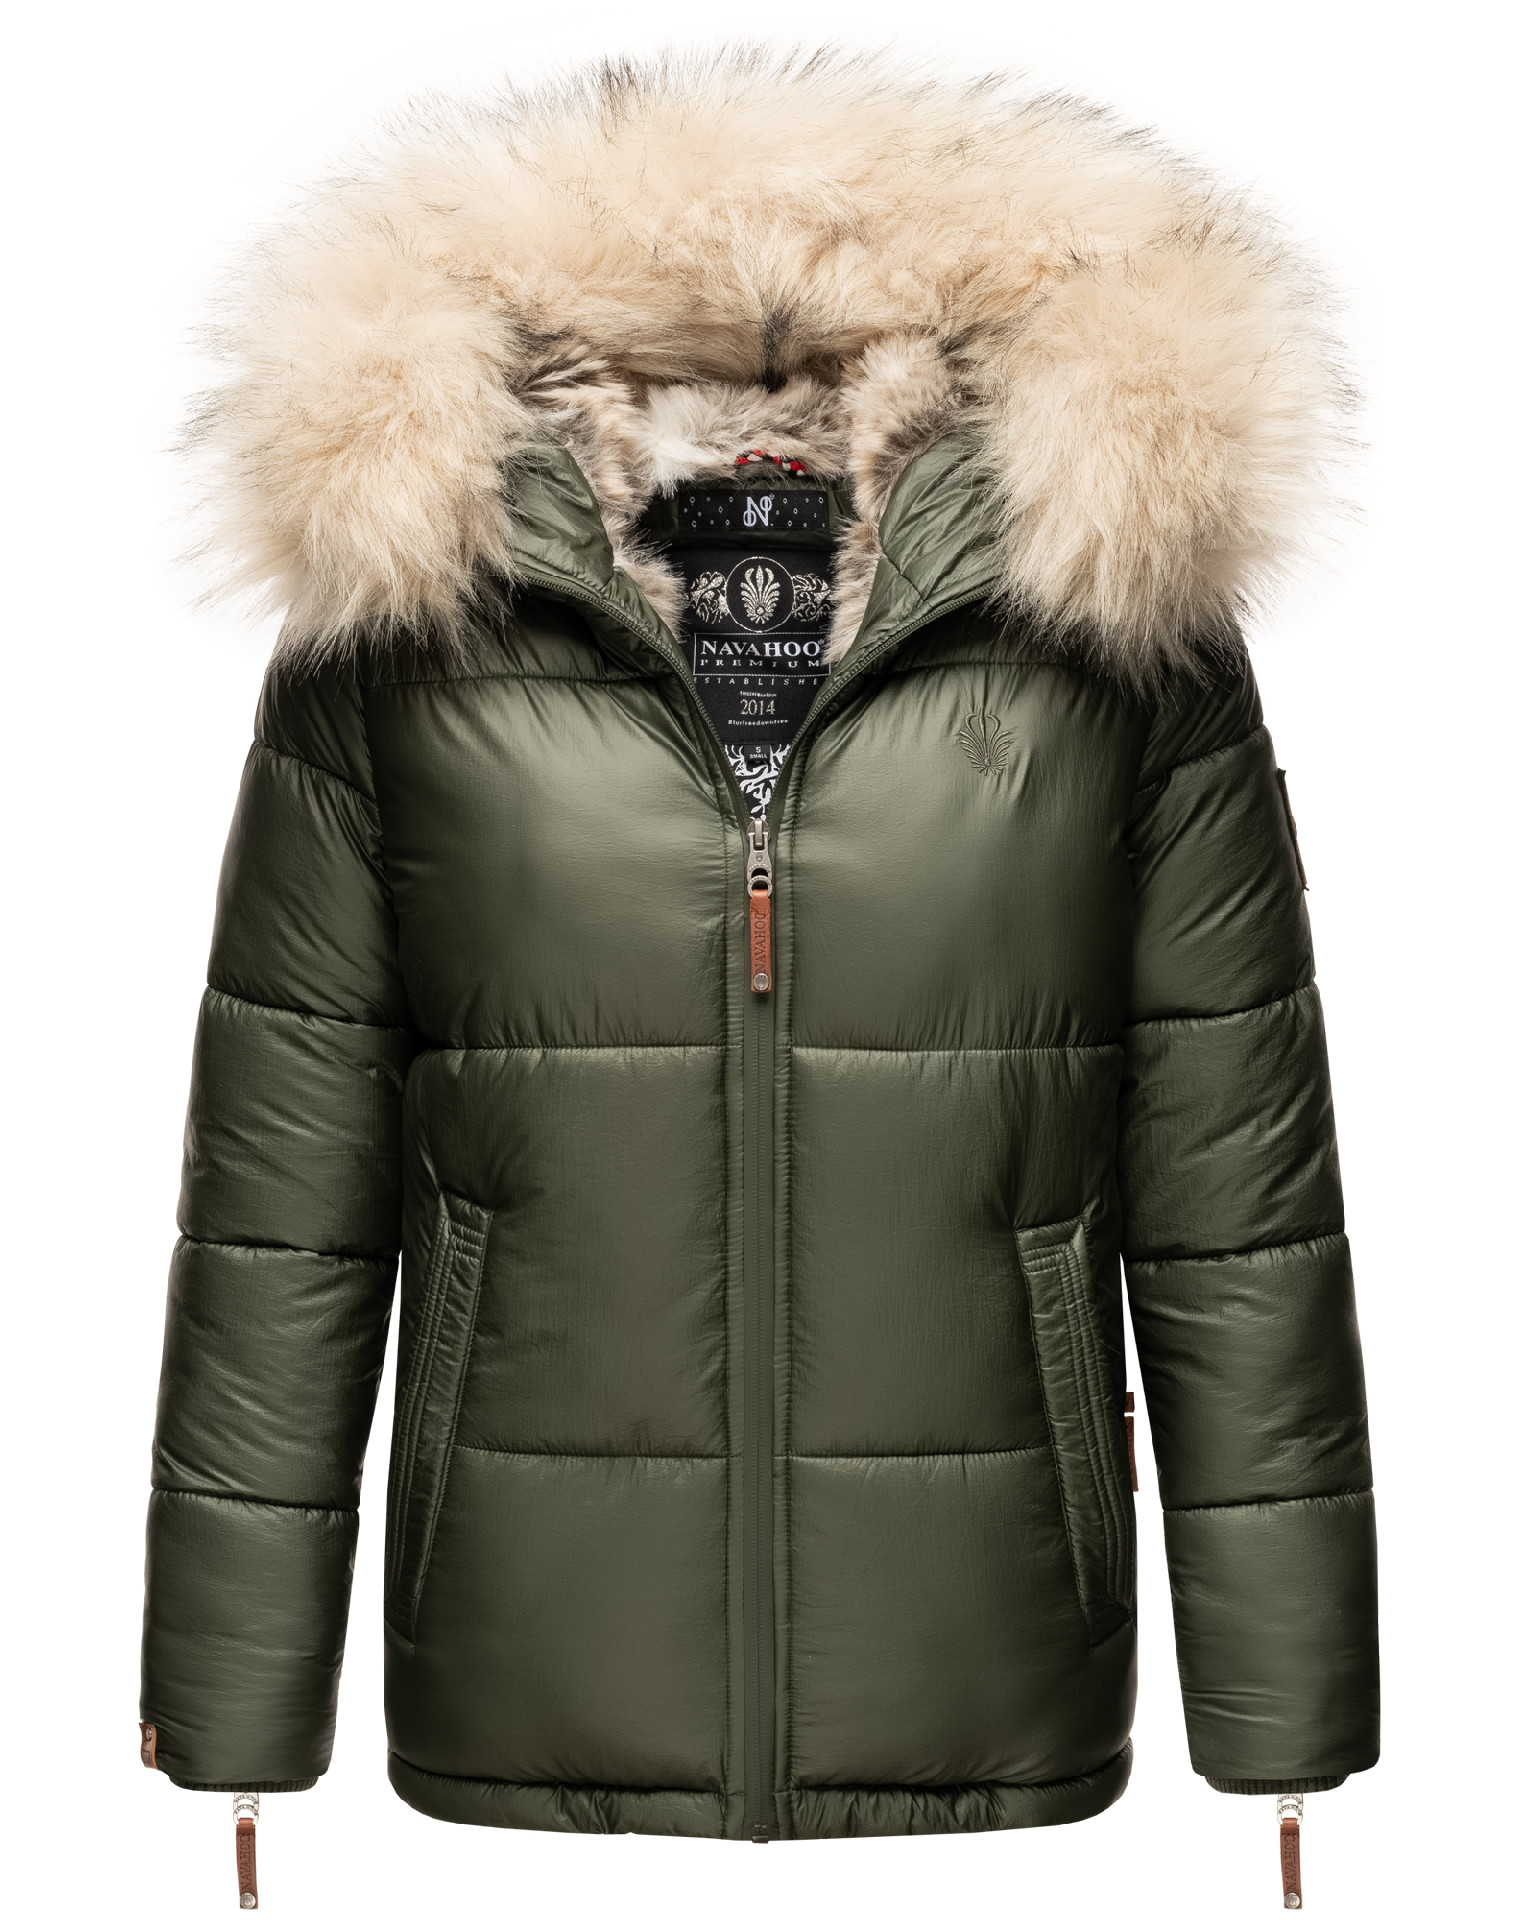 Dámská teplá zimní bunda s kožíškem Tikunaa Premium Navahoo - OLIVE Velikost: L